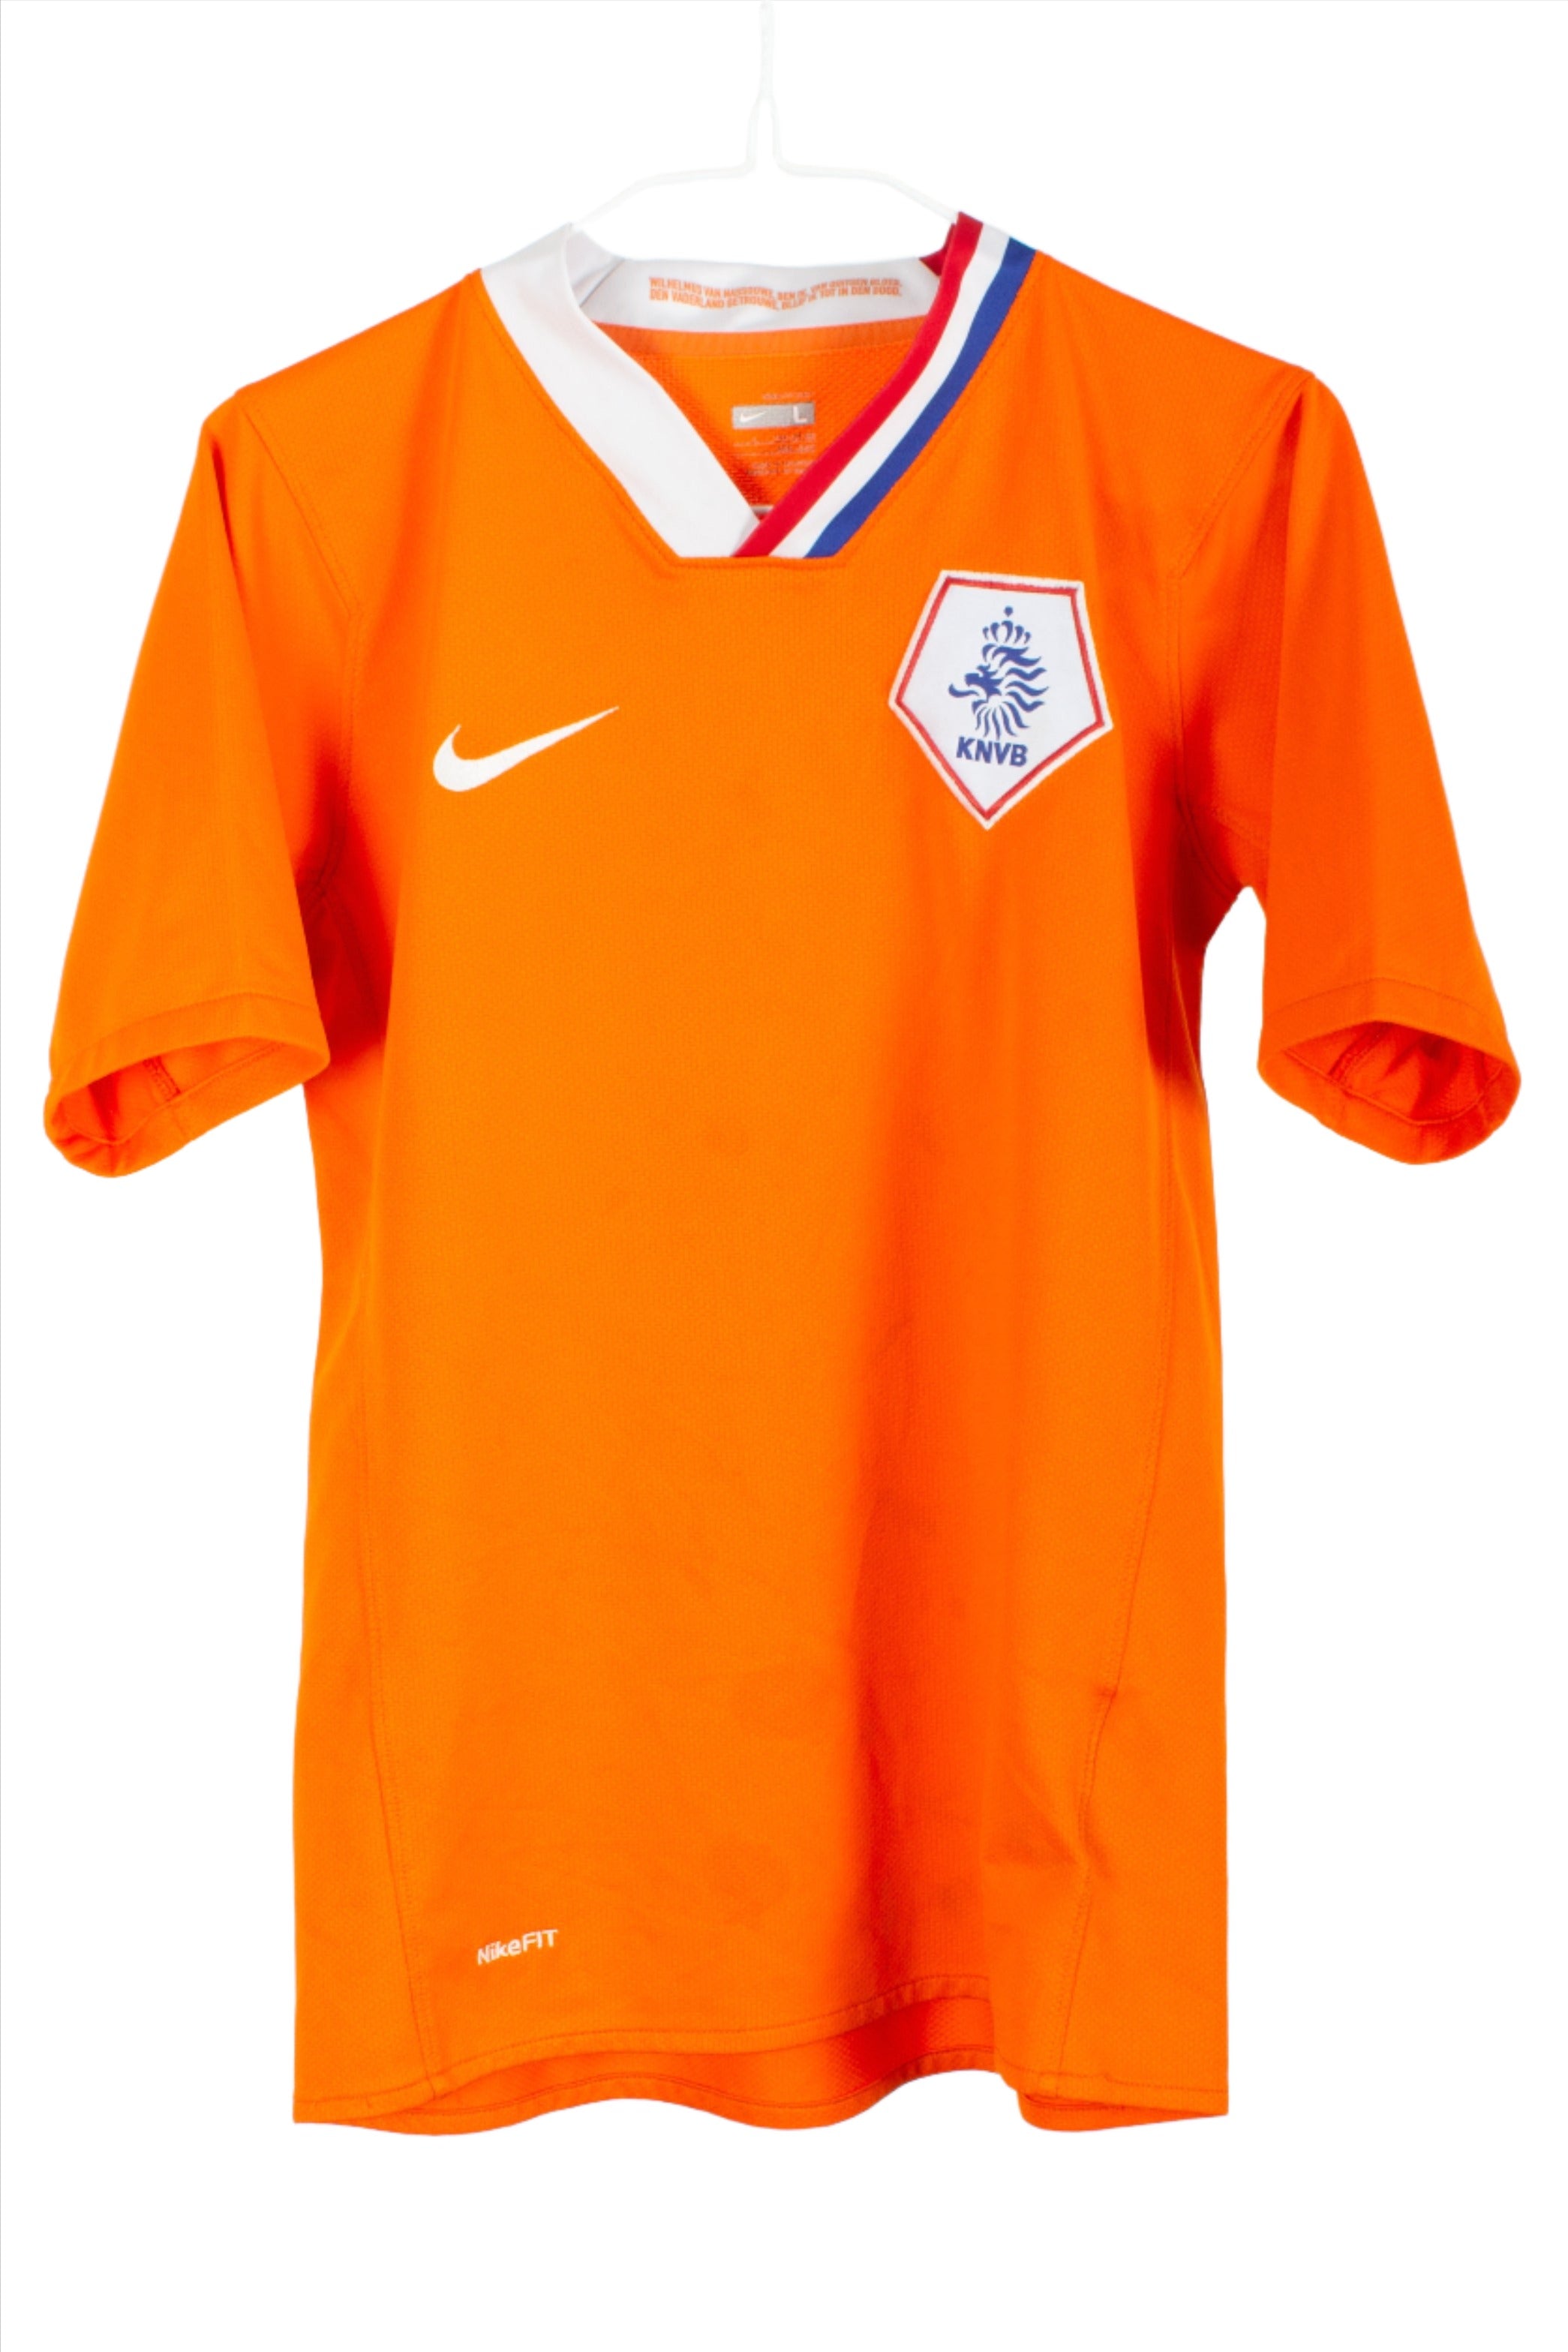 KIDS Netherlands 2008/10 Football Shirt